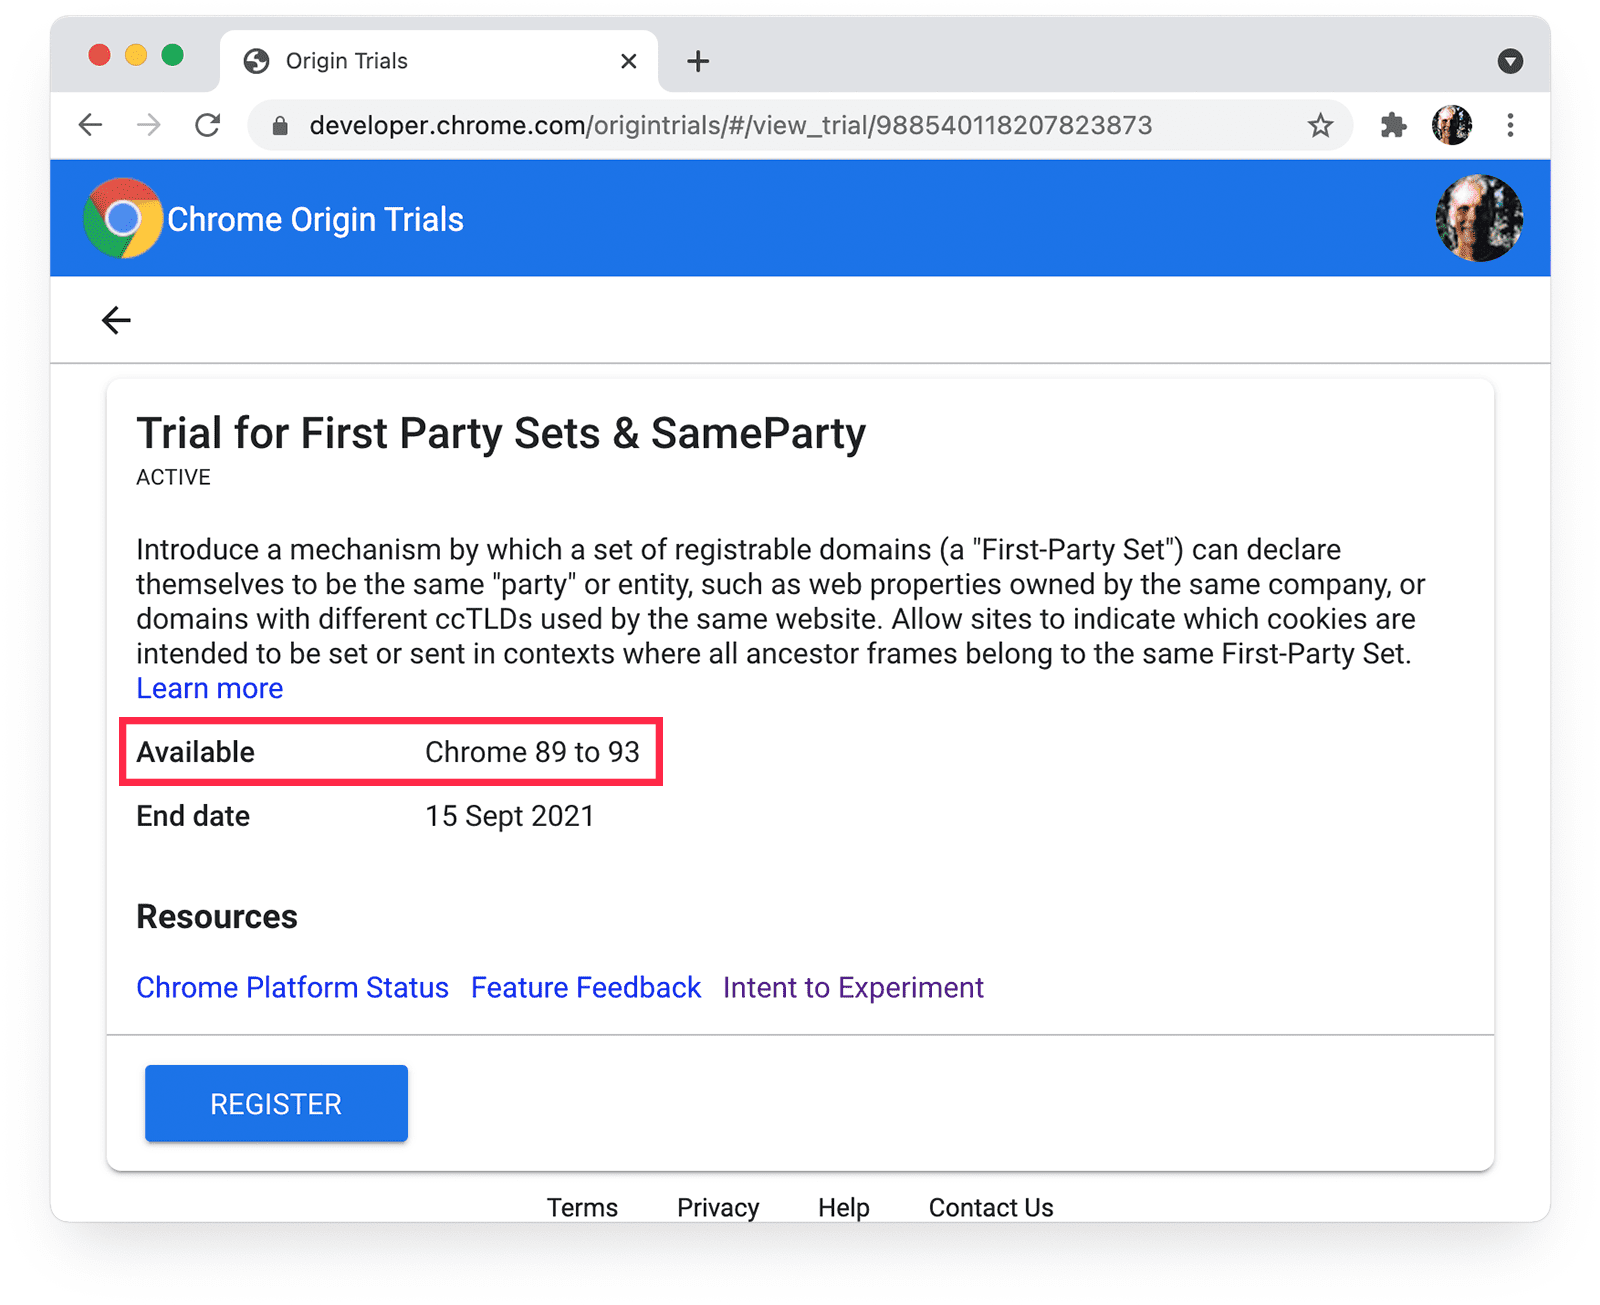 Chrome Kaynak Denemeleri
sayfası. Chrome kullanılabilirliği vurgulanmış SameParty